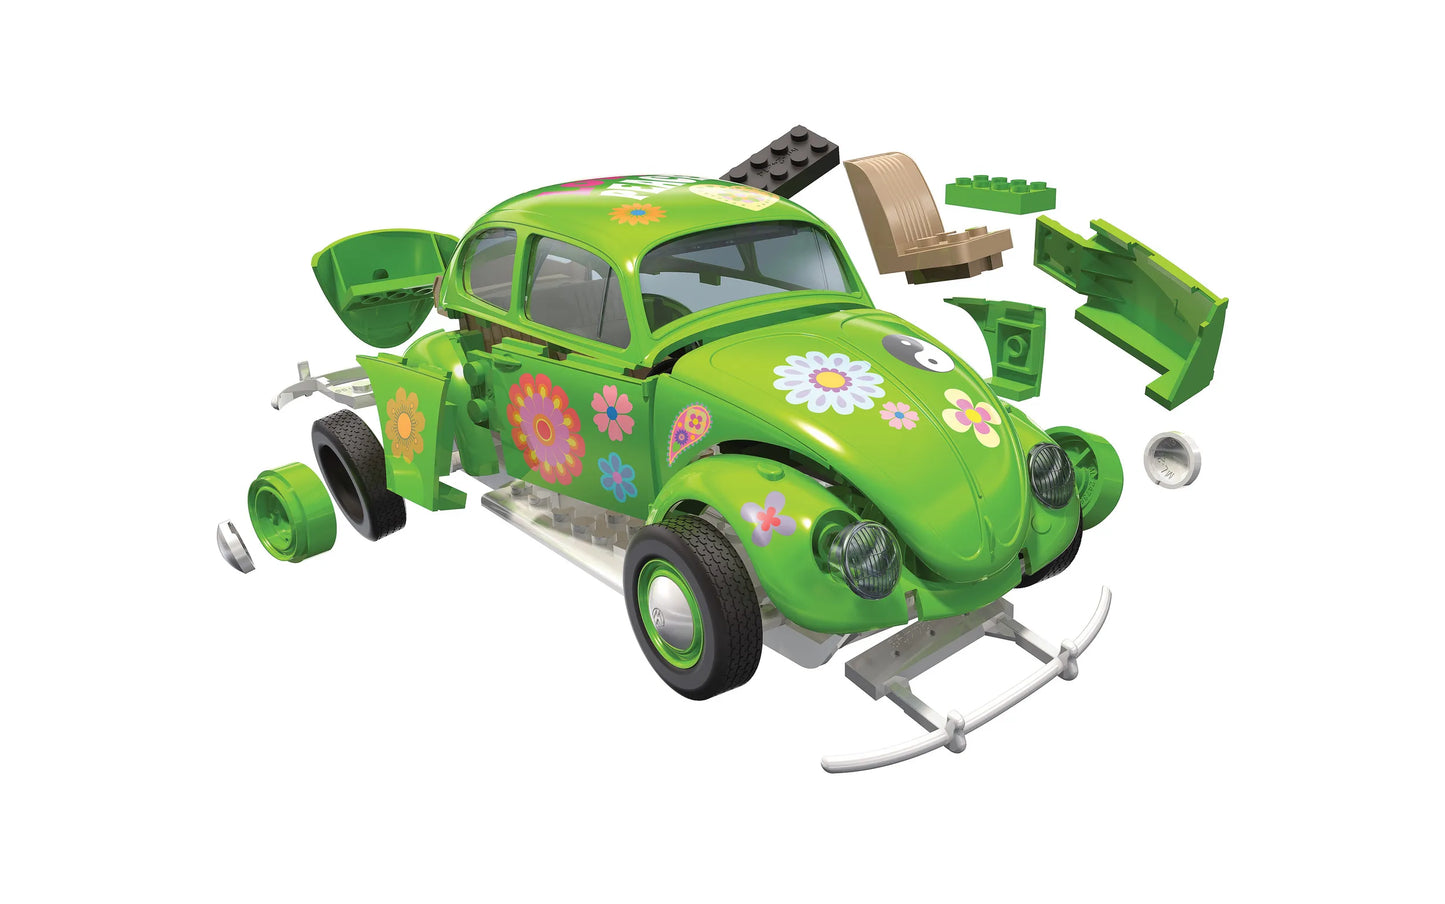 Airfix Quickbuild VW Beetle 'Flower Power'